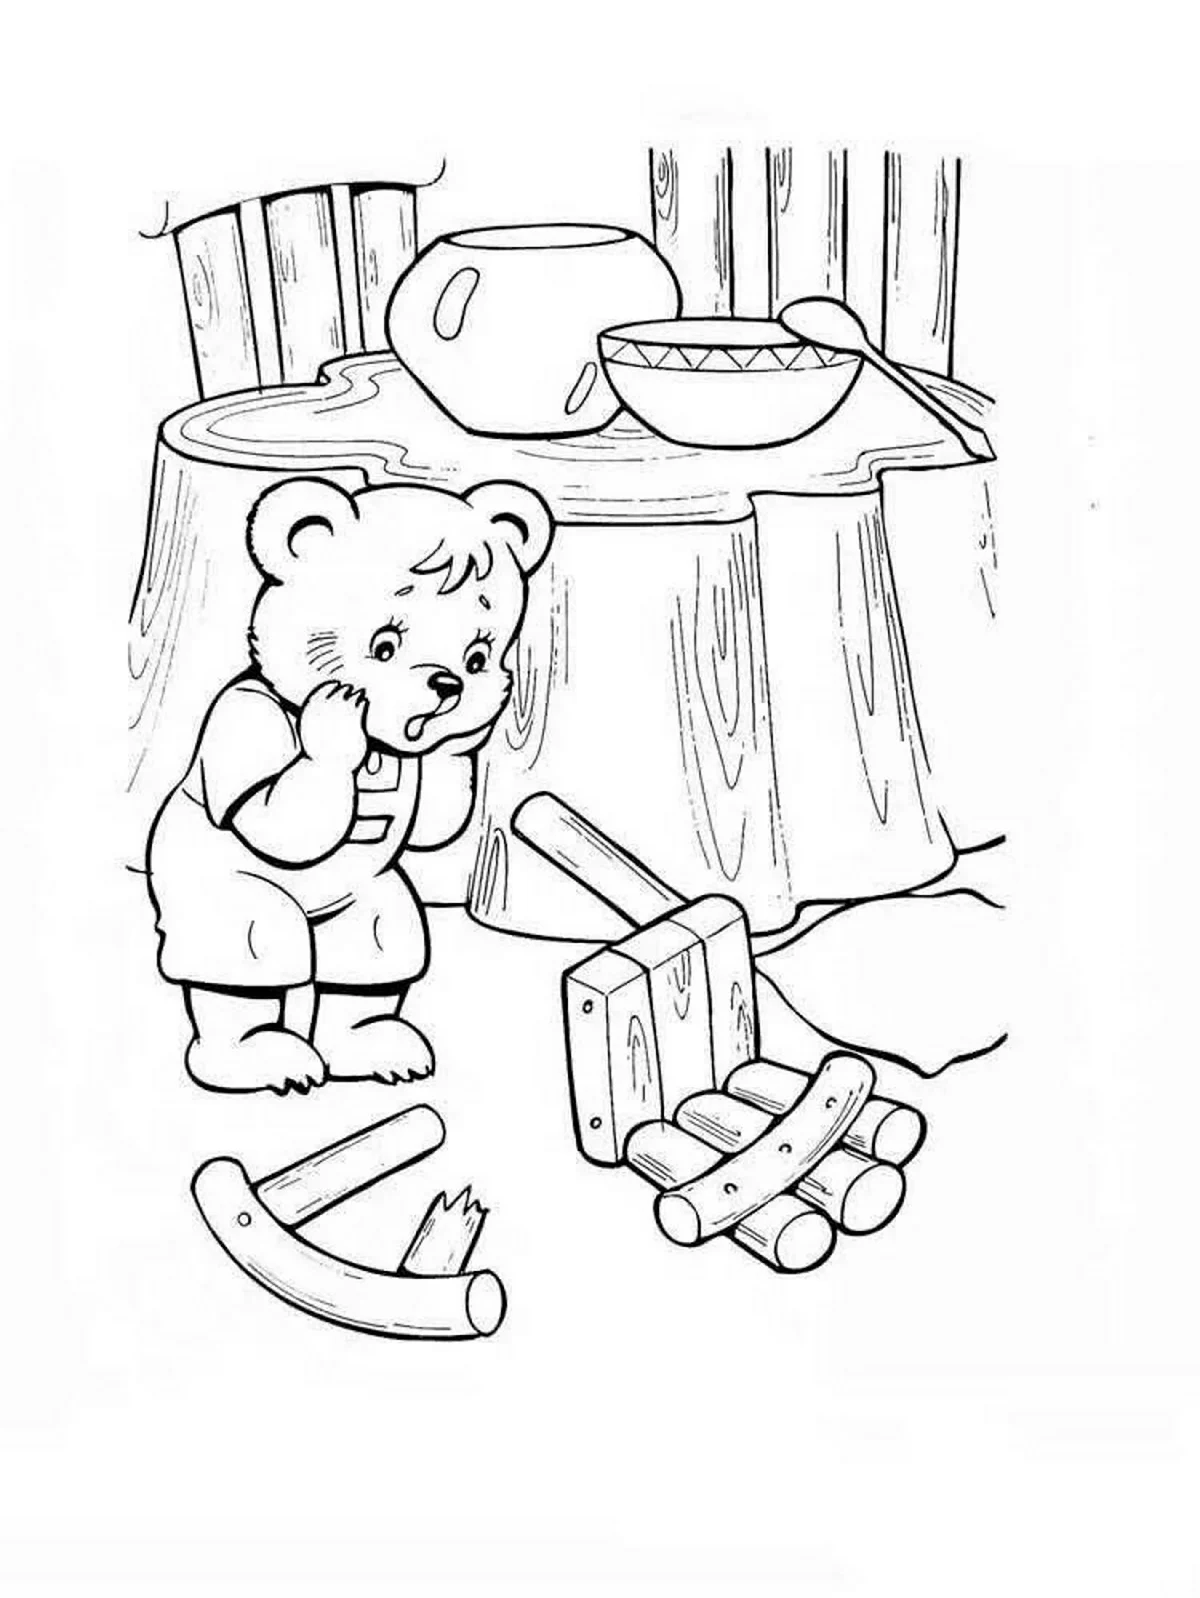 Раскраска к сказке три медведя для детей. Для срисовки